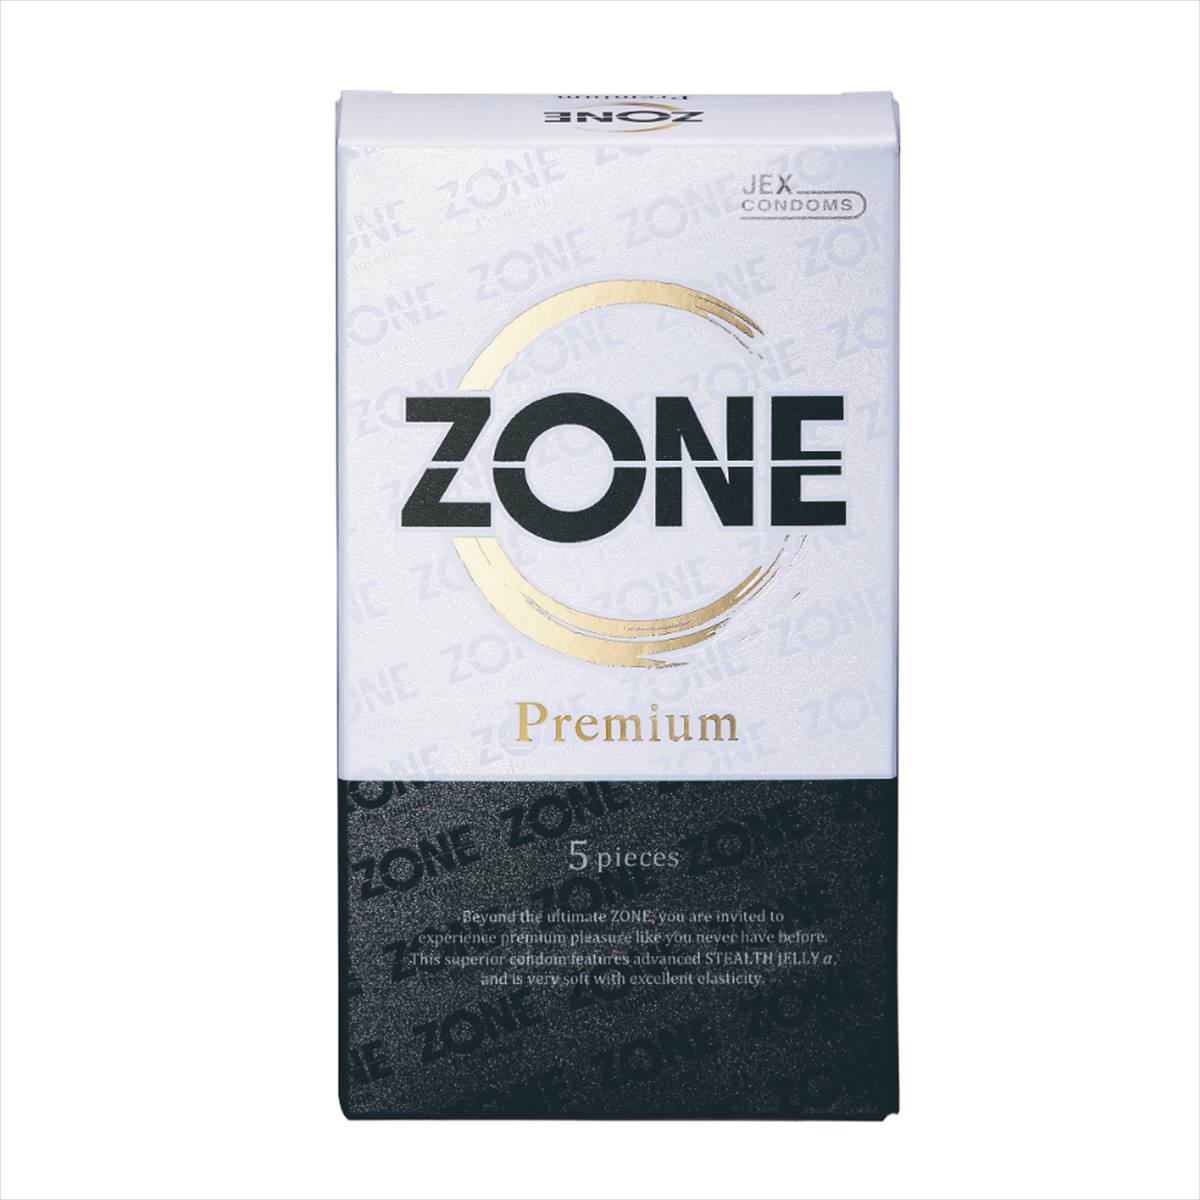 ZONE Premium 5